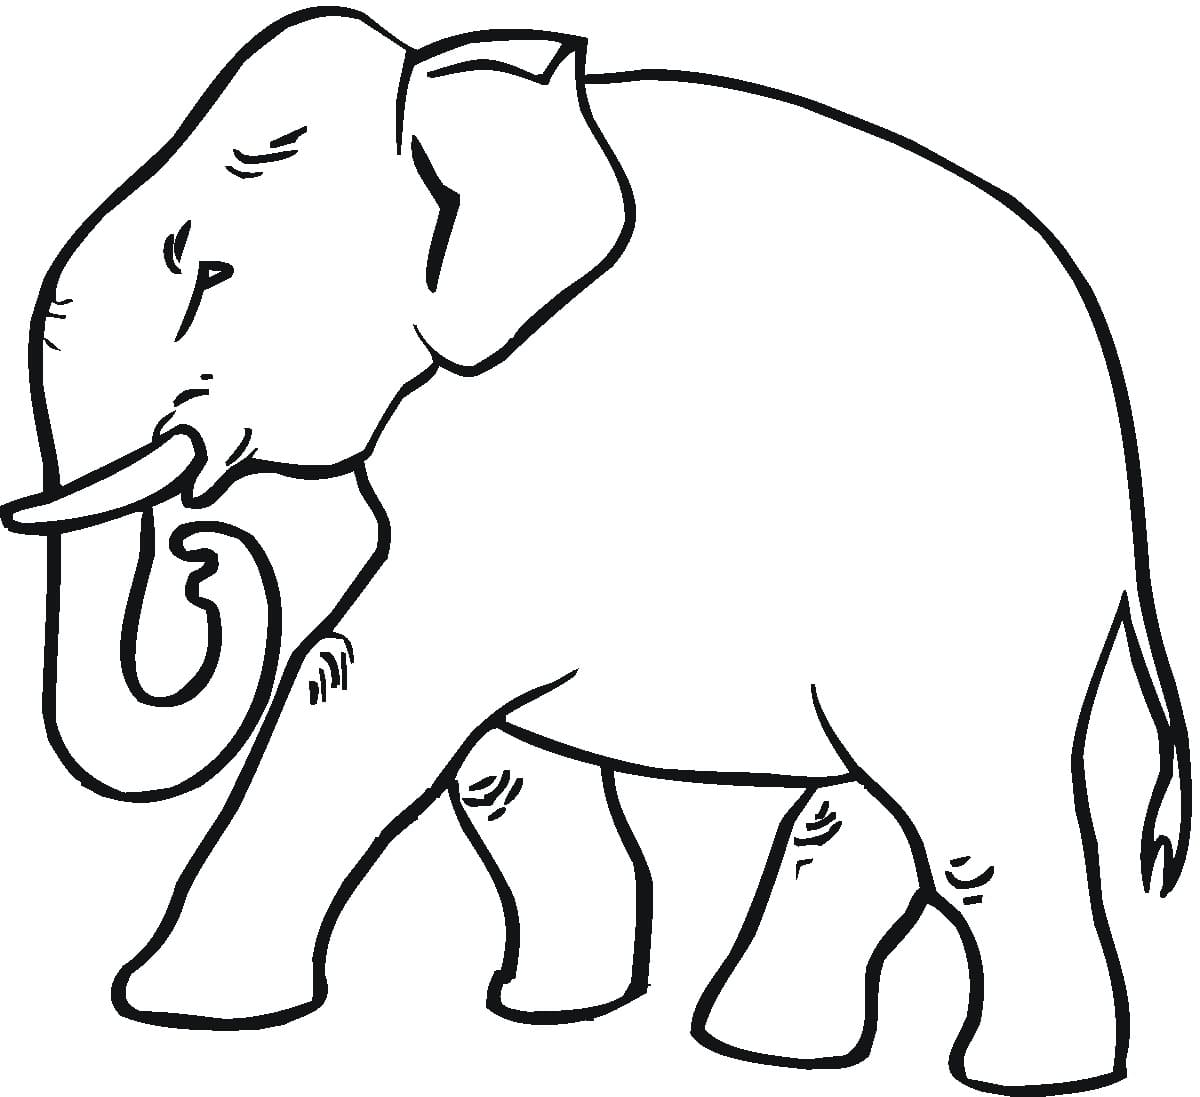 Éléphant d’Asie coloring page